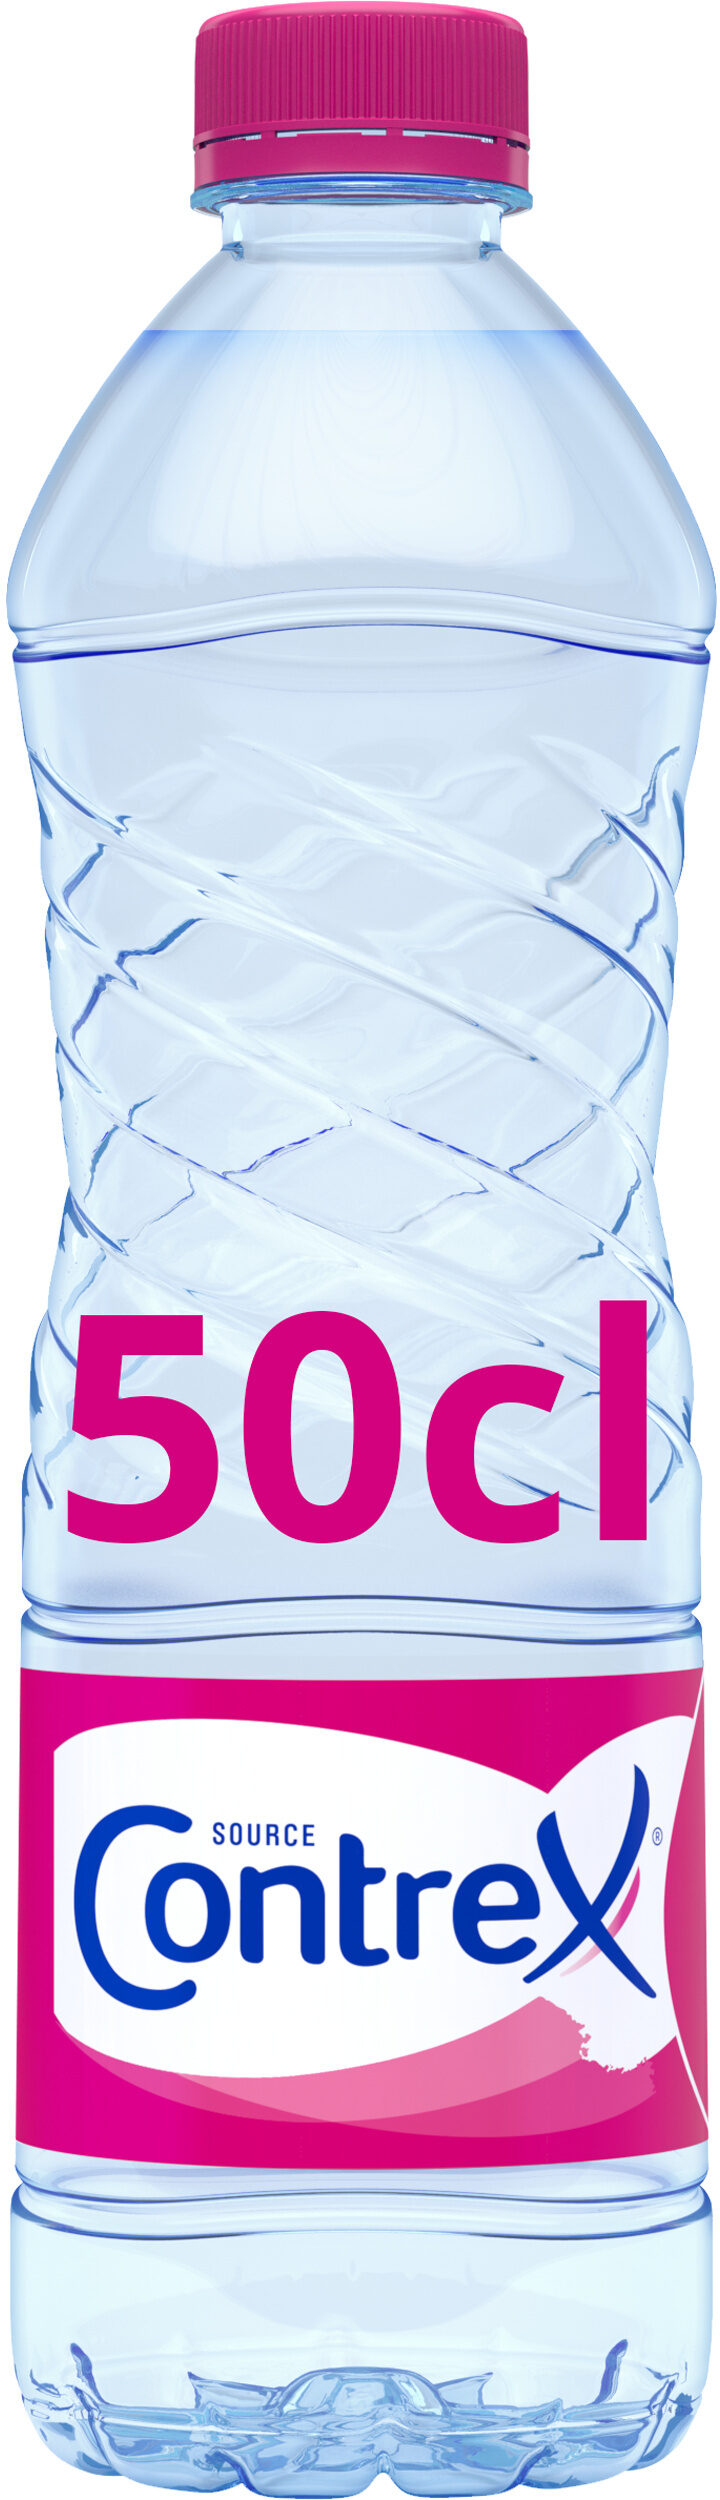 eau minérale naturelle - Product - fr